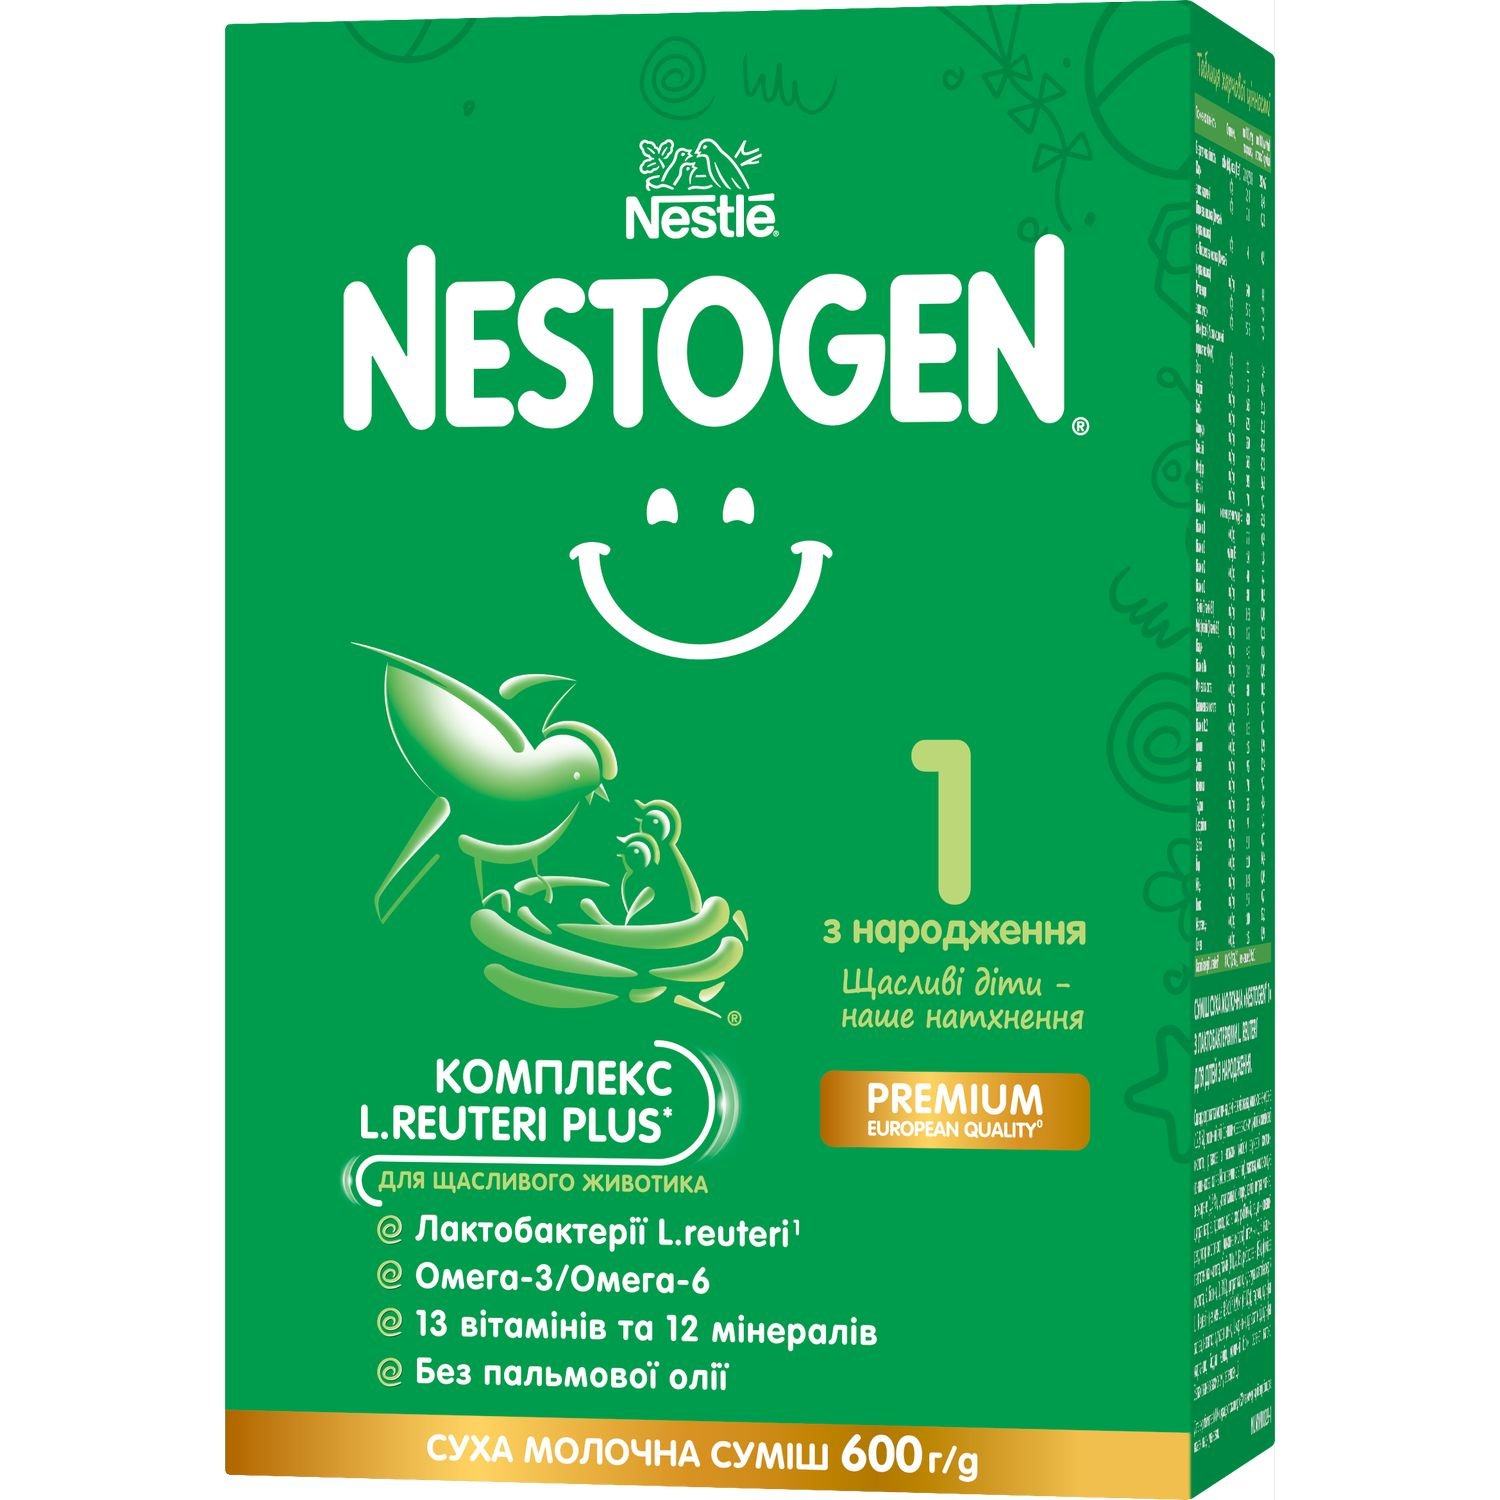 Фото - Дитяче харчування Nestogen Суха молочна суміш  1 з лактобактеріями L. Reuteri, 600 г 